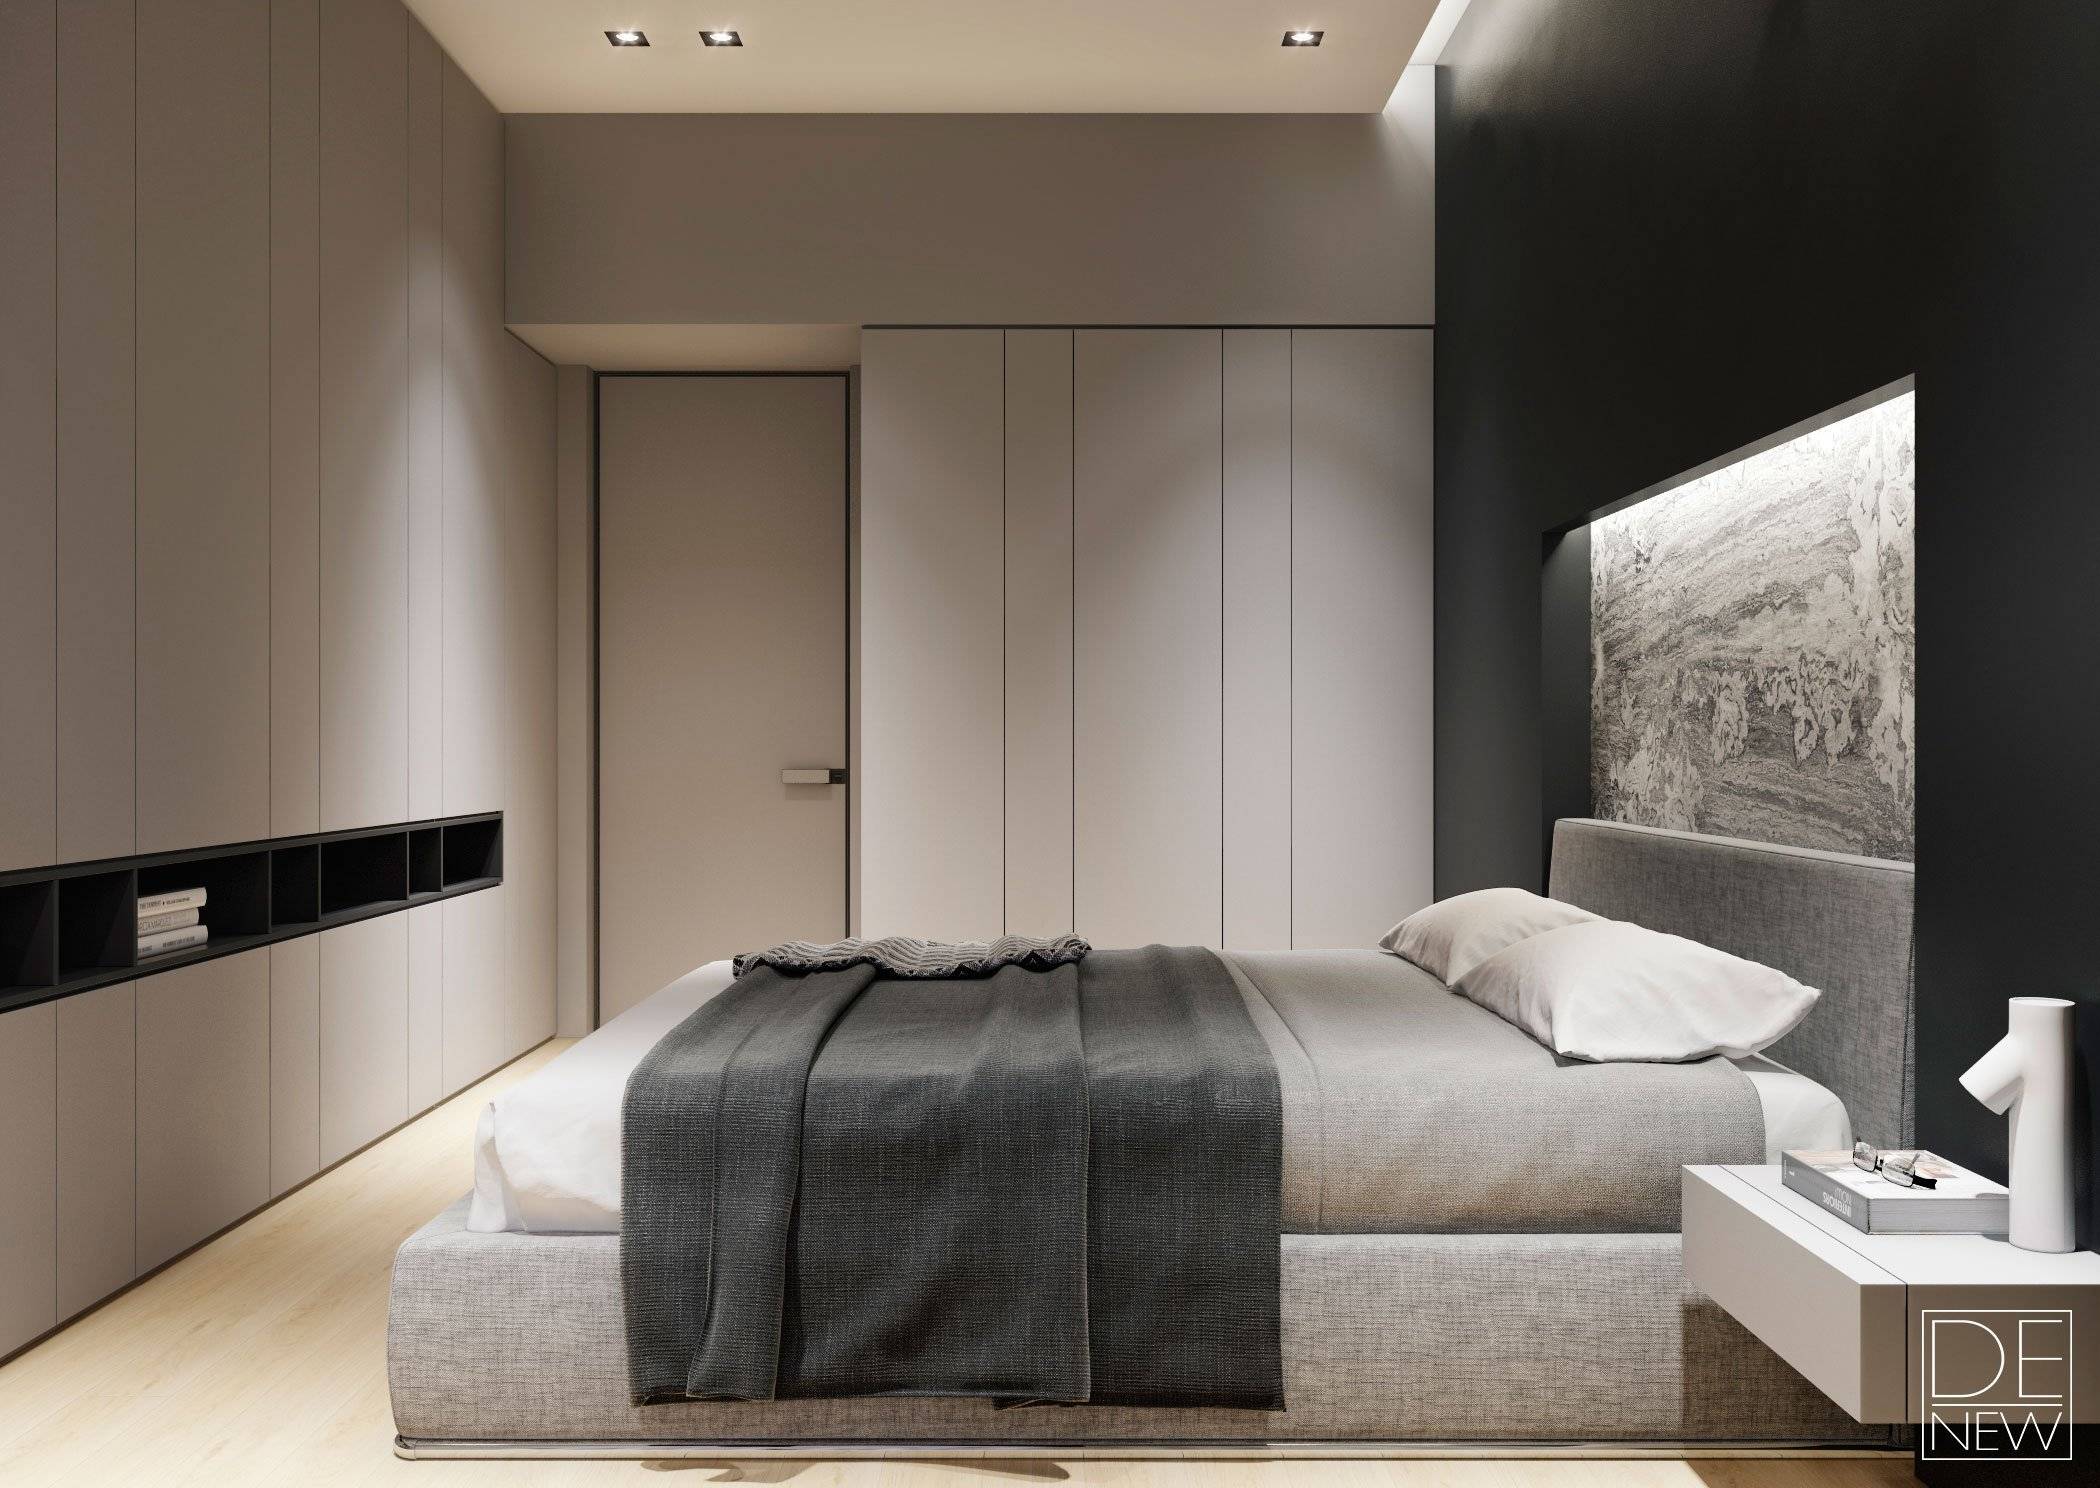 Дизайн интерьера спальни в стиле минимализм: фото идеи